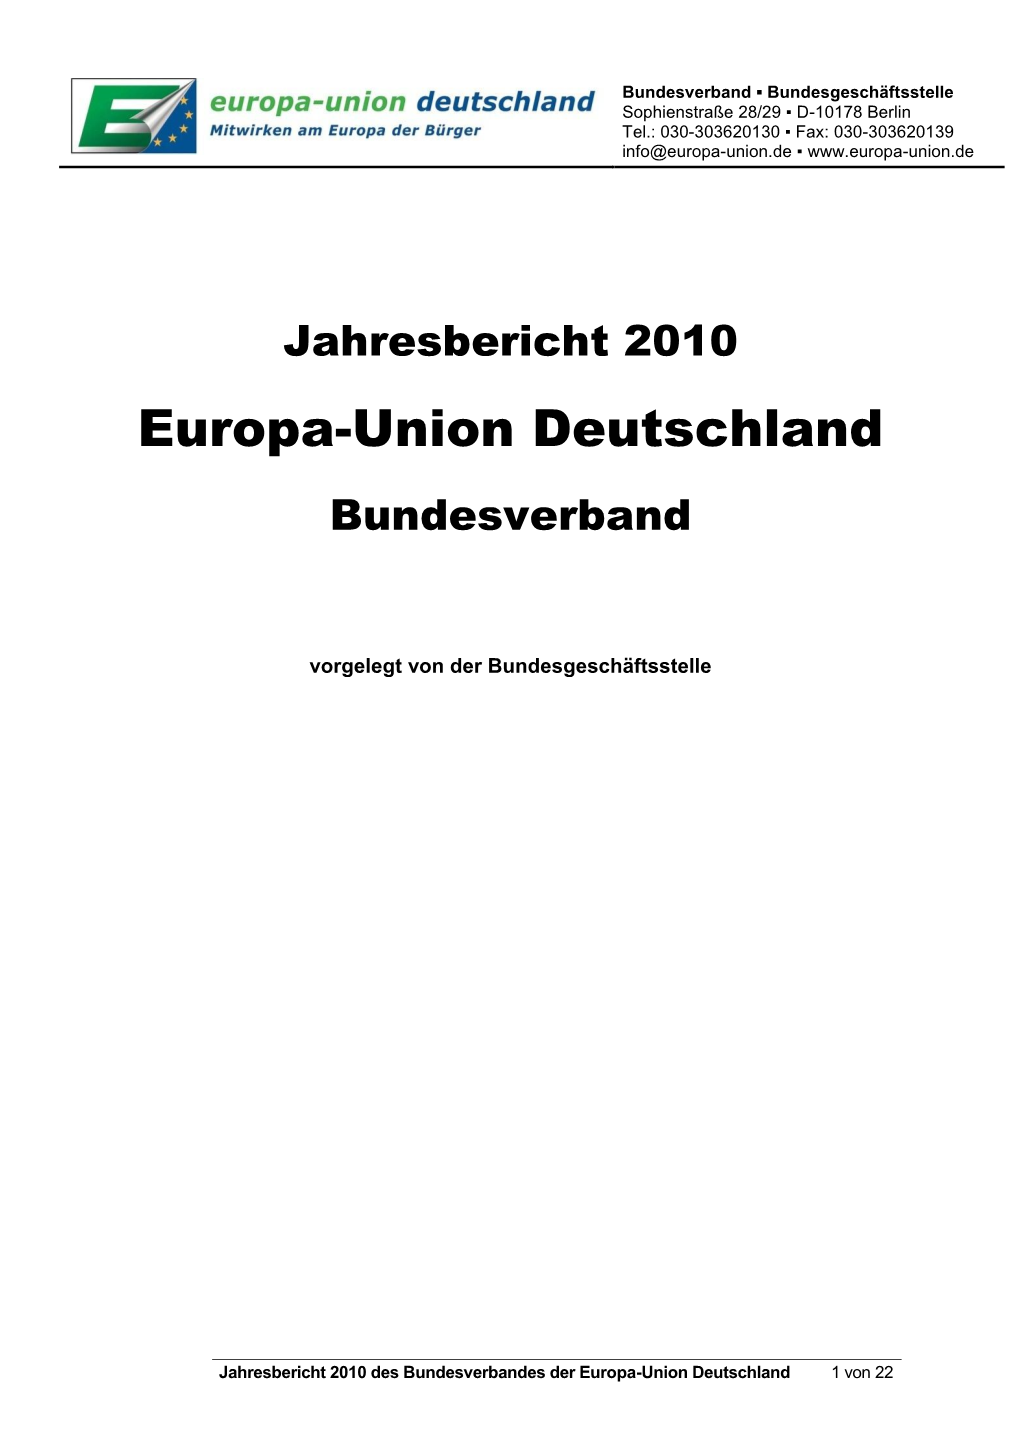 Jahresbericht 2010 Europa-Union Deutschland Bundesverband